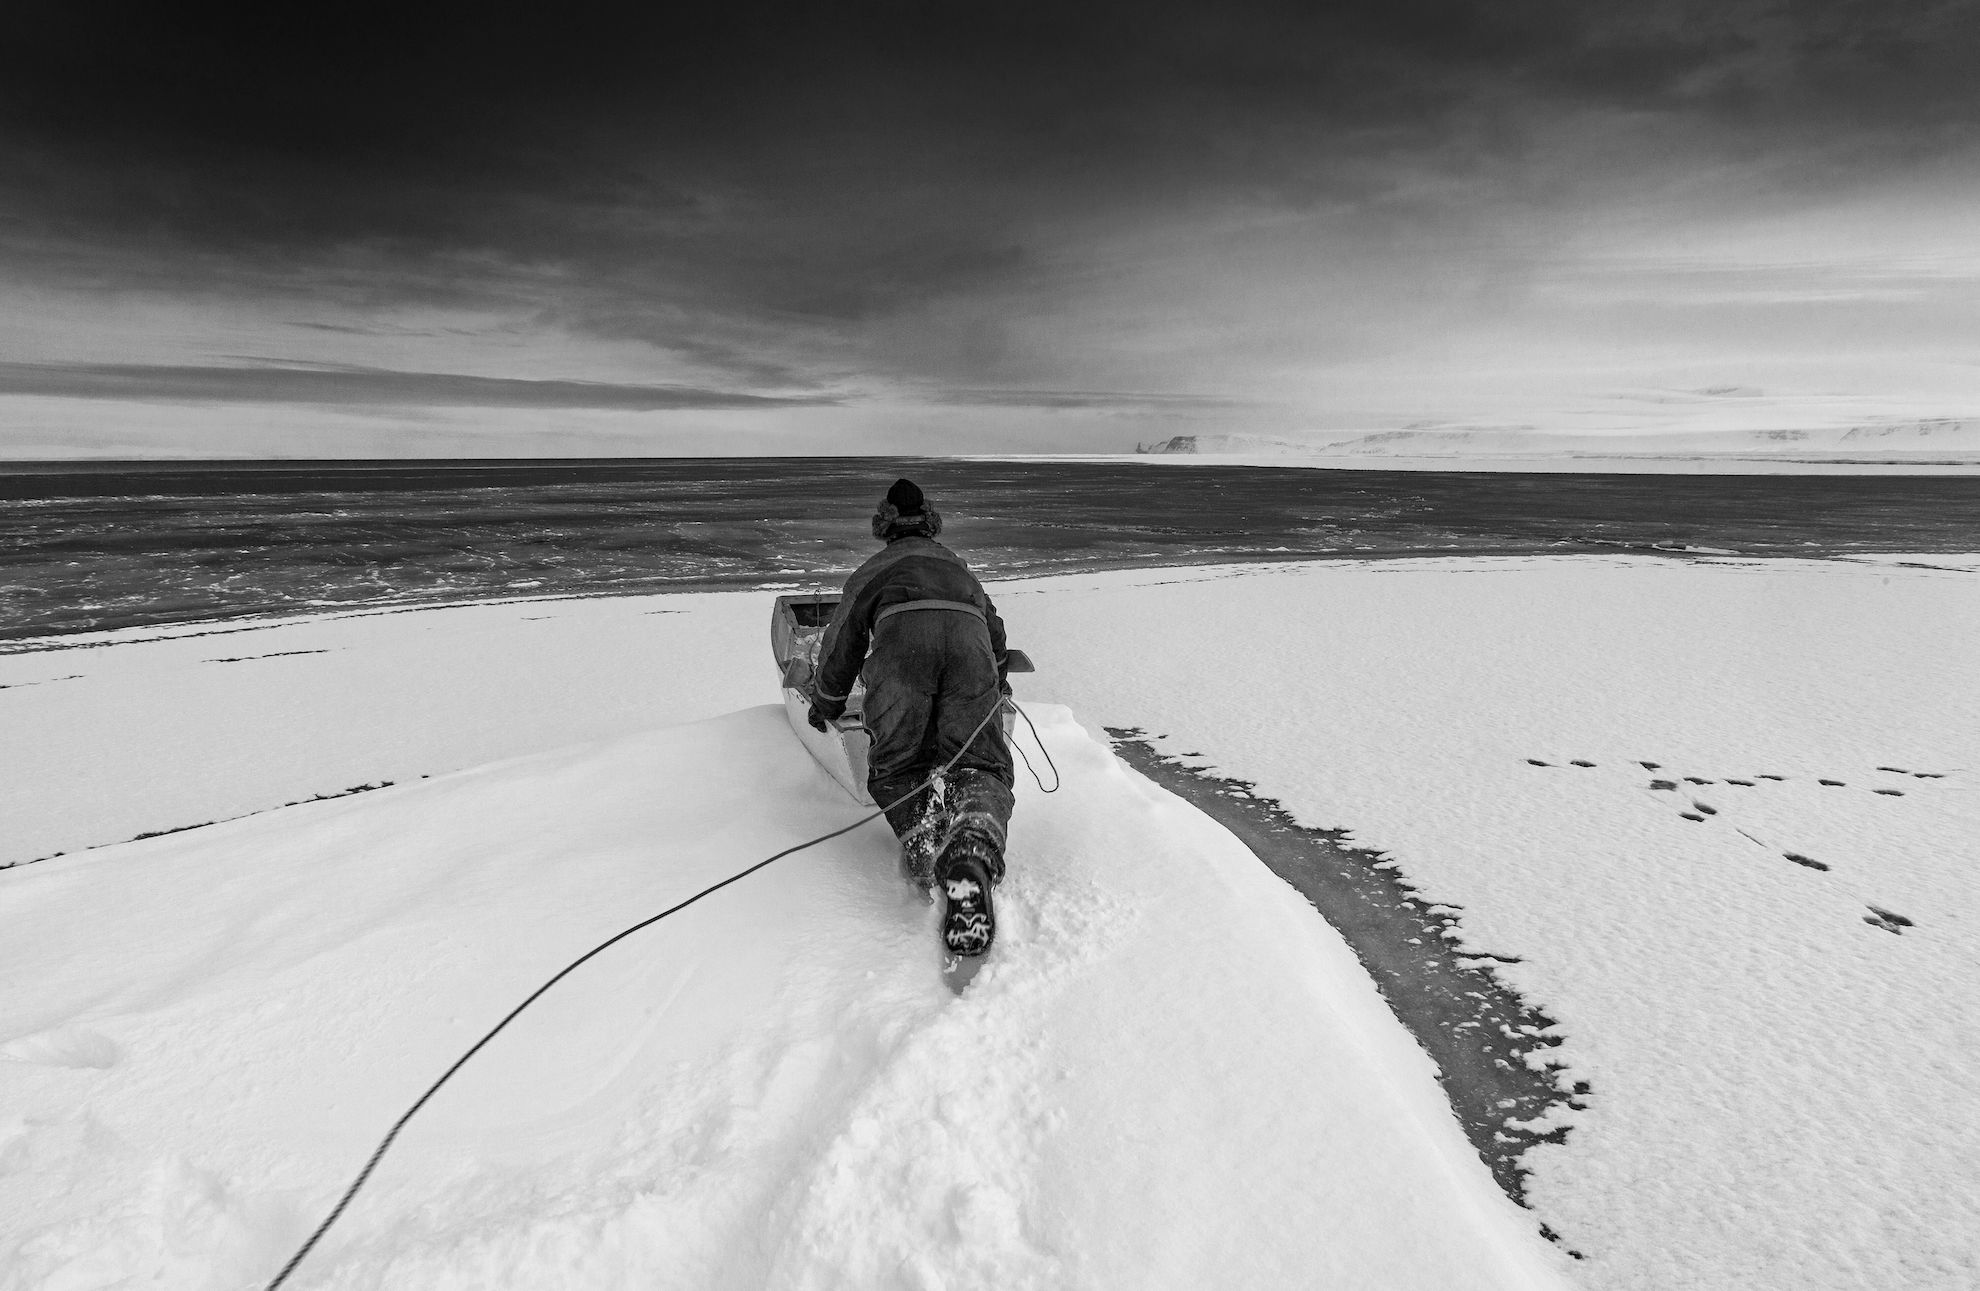 Vedhæftede foto kan udelukkende benyttes til omtale af Arktisk Festival 2019 ved angivelse af fotografnavn. Alt andet brug skal aftales med fotograf Carsten Egevang. Fotoet kan ikke indgå i billedarkiver og kan ikke videregives til 3. part. Fotoet er en del af udstillingen SIKU af Ragnar Axelsson og Carsten Egevang, der vises på Nordatlantens Bryggen november 2019 til marts 2020.